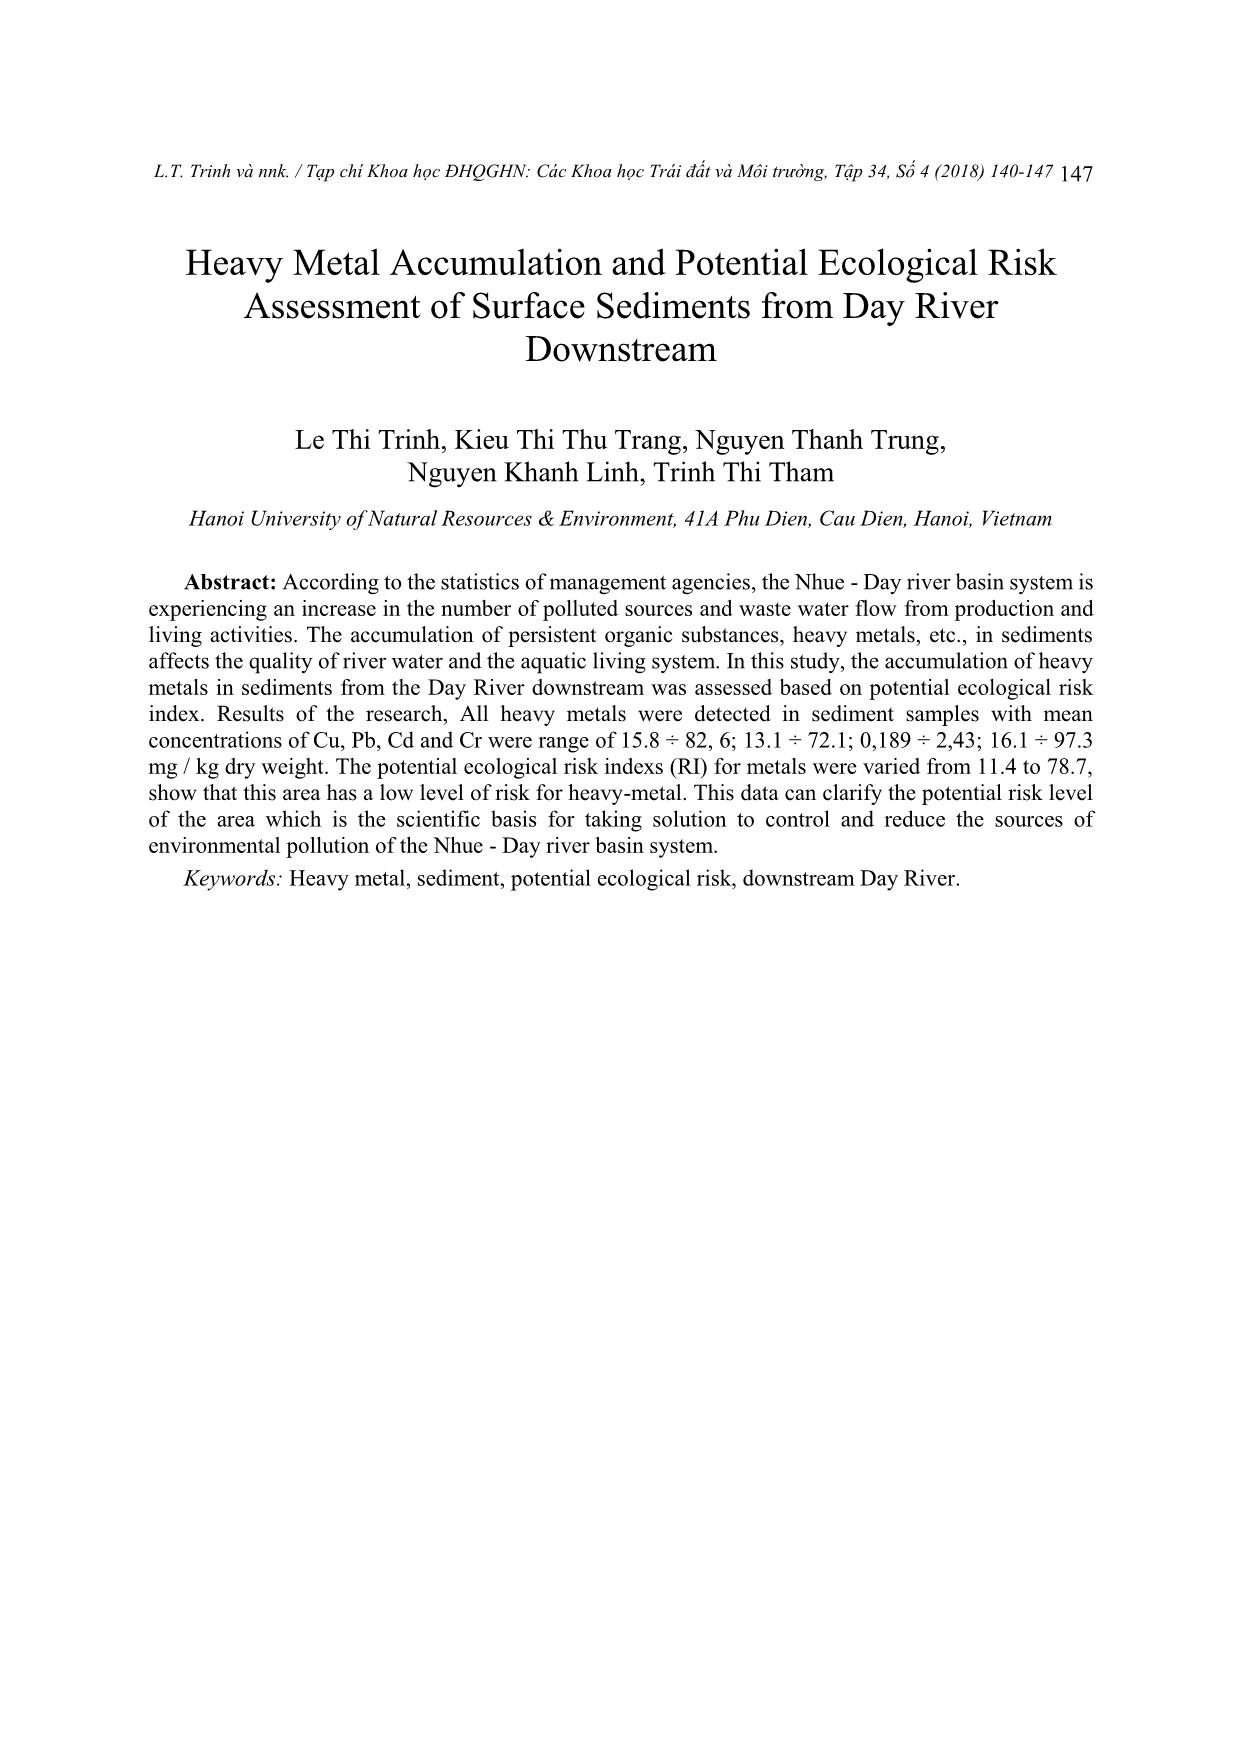 Đánh giá sự tích lũy và rủi ro sinh thái một số kim loại nặng trong trầm tích mặt khu vực hạ lưu sông Đáy trang 8